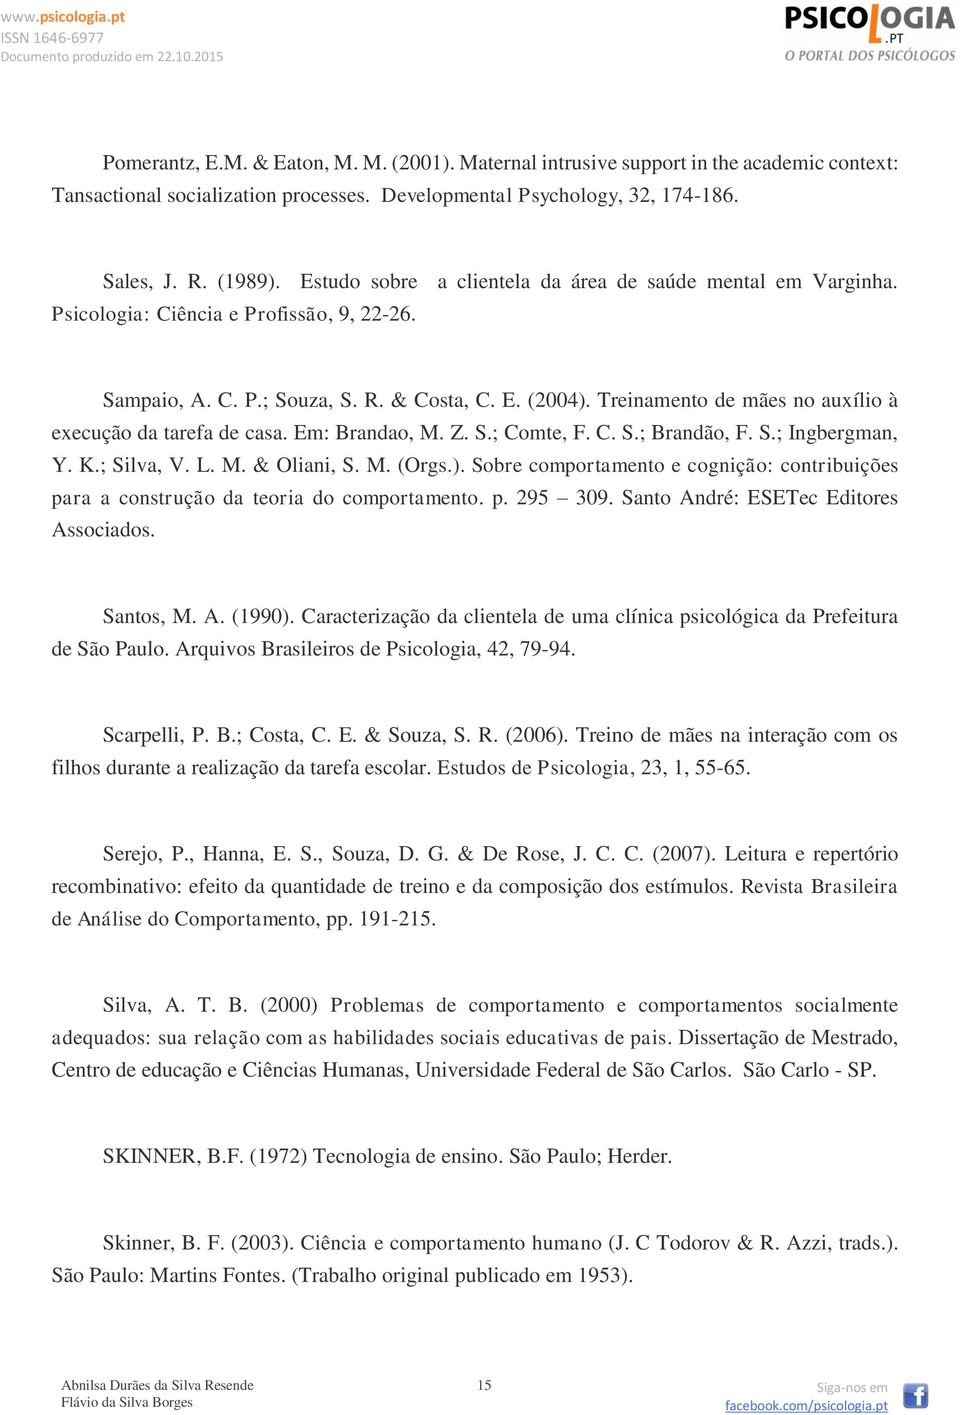 Treinamento de mães no auxílio à execução da tarefa de casa. Em: Brandao, M. Z. S.; Comte, F. C. S.; Brandão, F. S.; Ingbergman, Y. K.; Silva, V. L. M. & Oliani, S. M. (Orgs.).